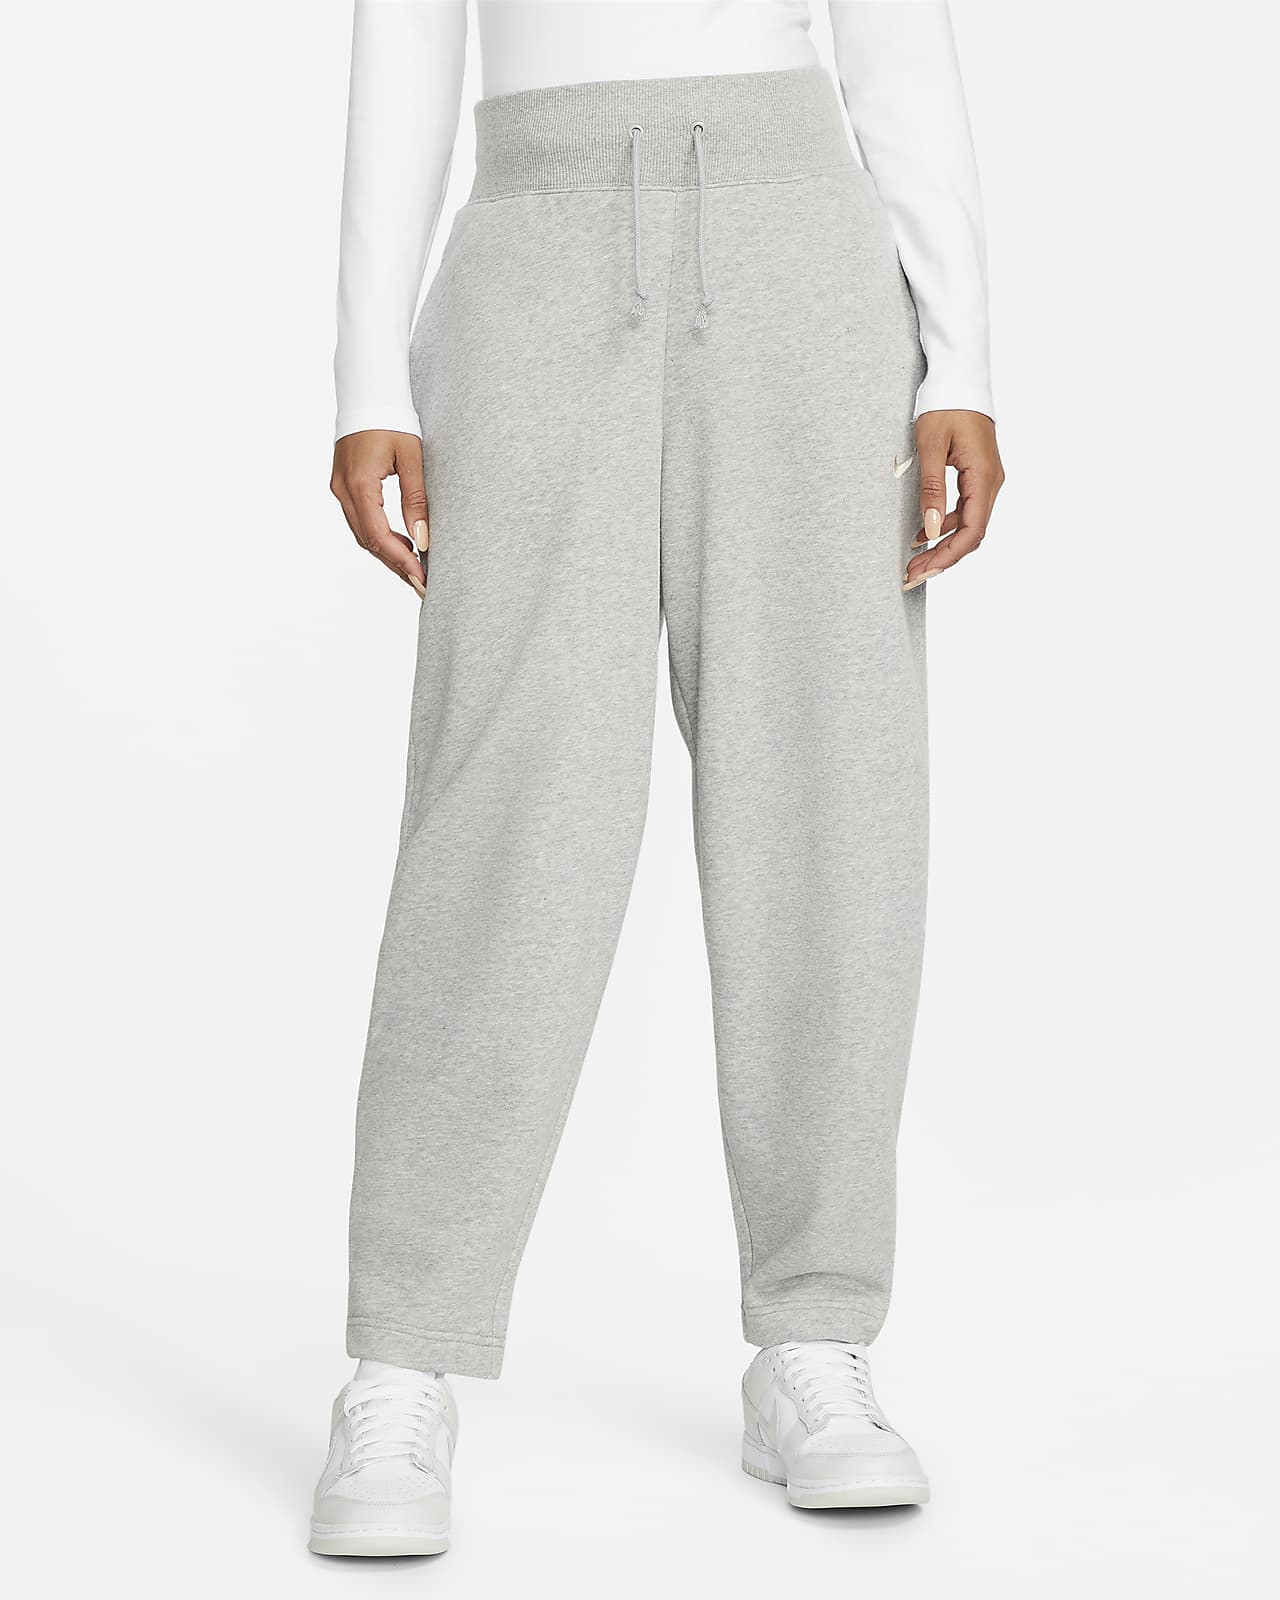 Γυναικείο ψηλόμεσο παντελόνι φόρμας 7/8 με στρογγυλεμένη γραμμή Nike Sportswear Phoenix Fleece